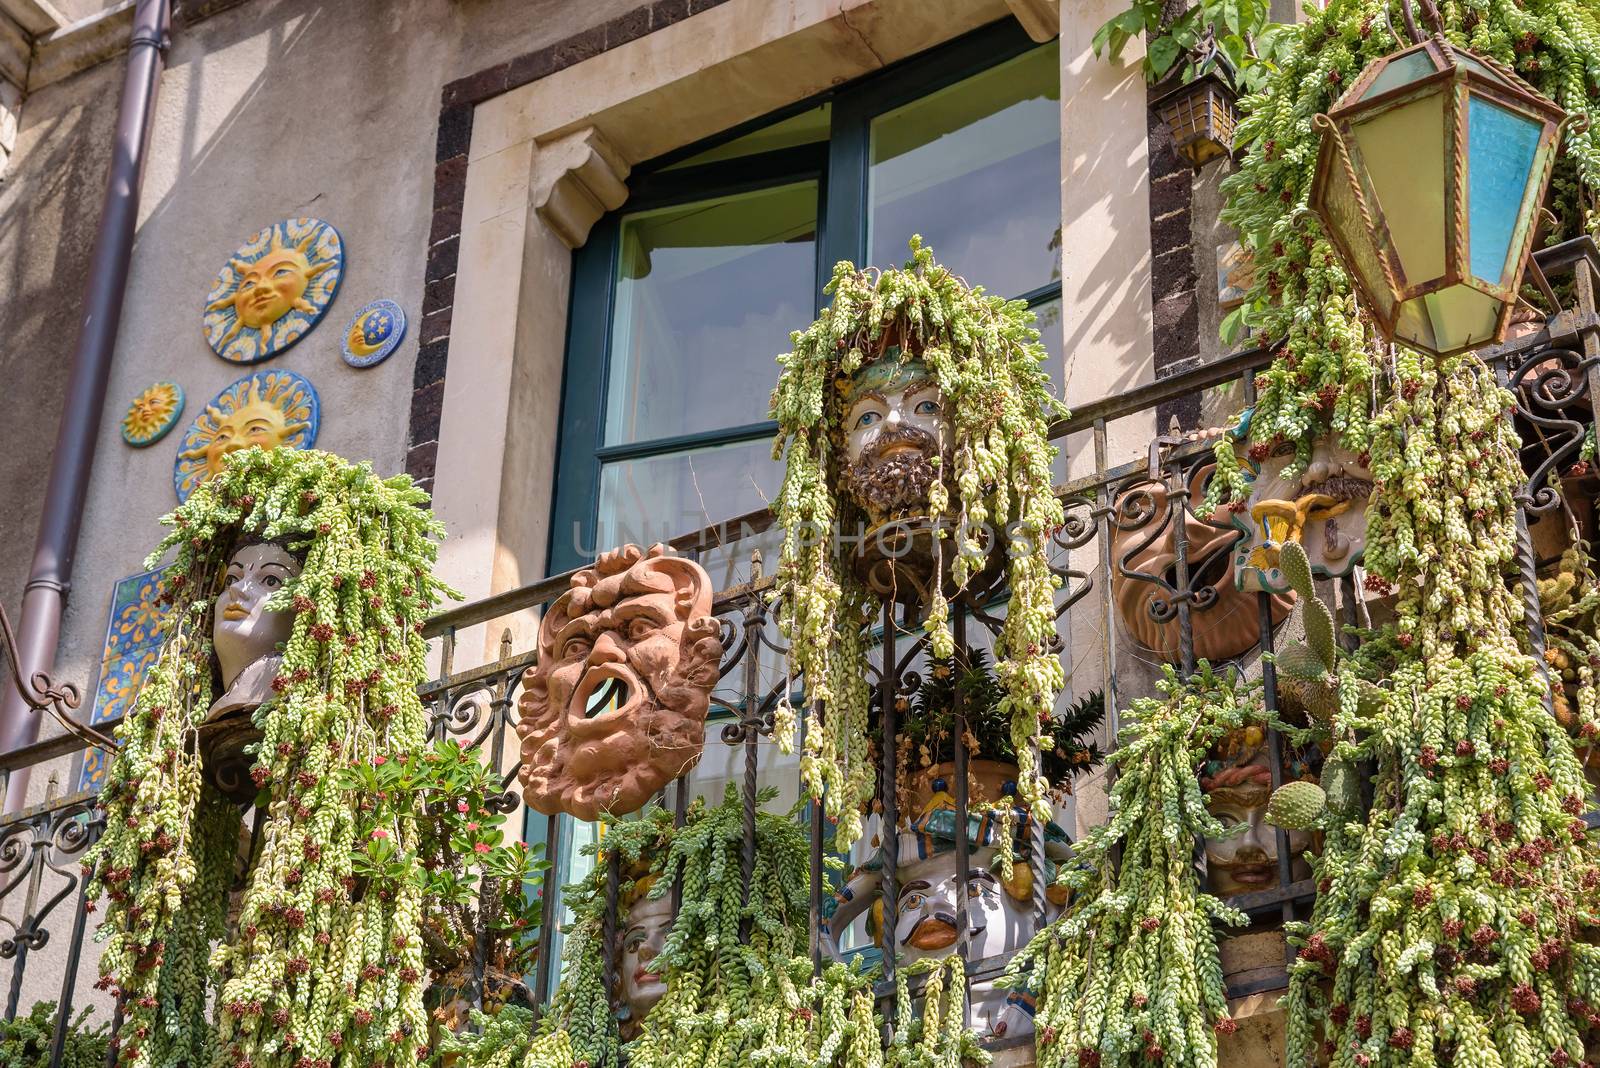 Characteristic balcony decorations in Taormina, Sicily, Italy